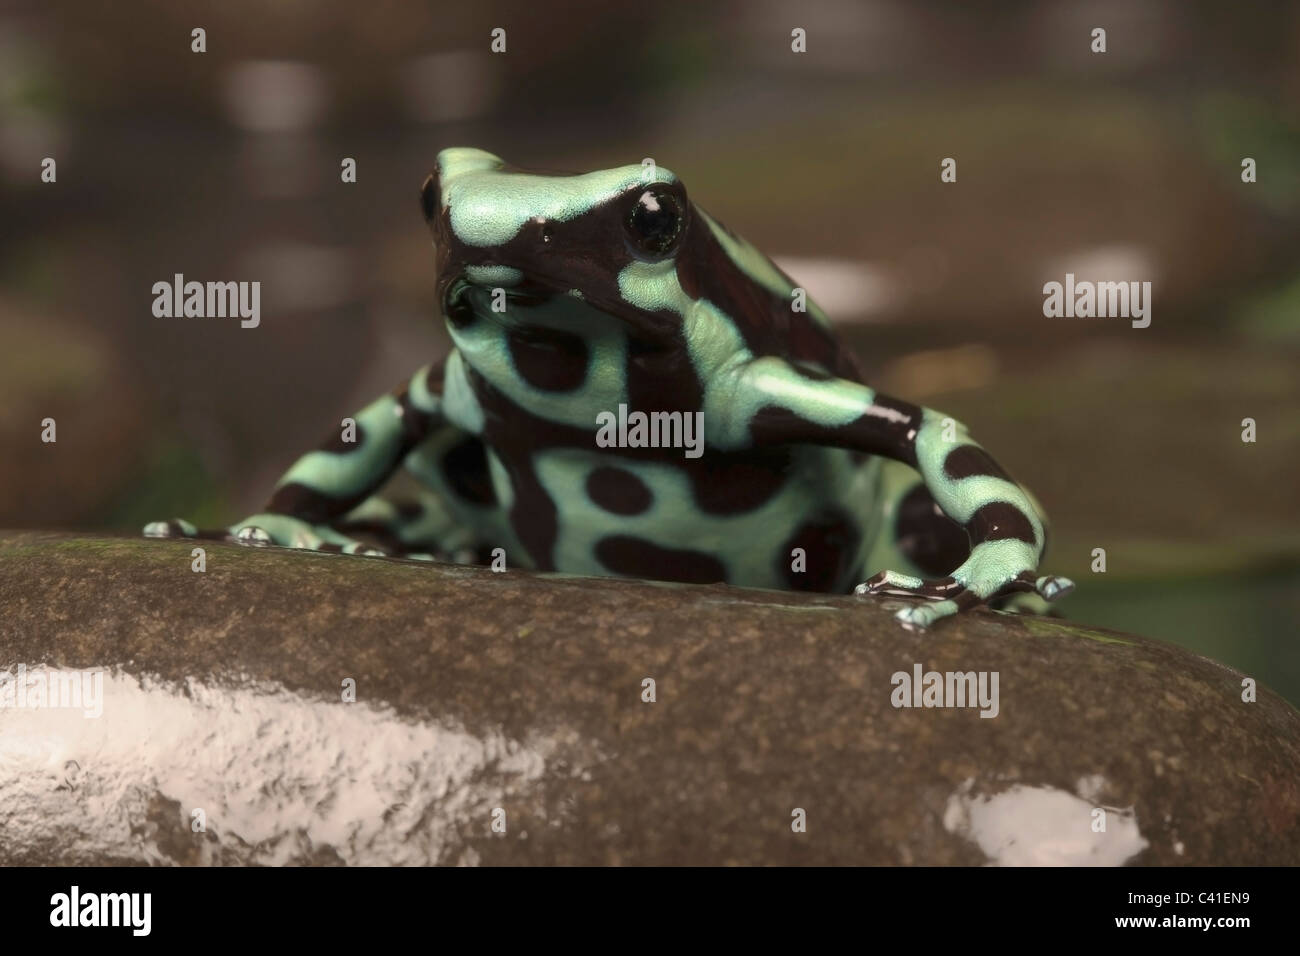 Noir et vert poison dart frog [dendrobates auratus] sur un rocher, portrait Banque D'Images